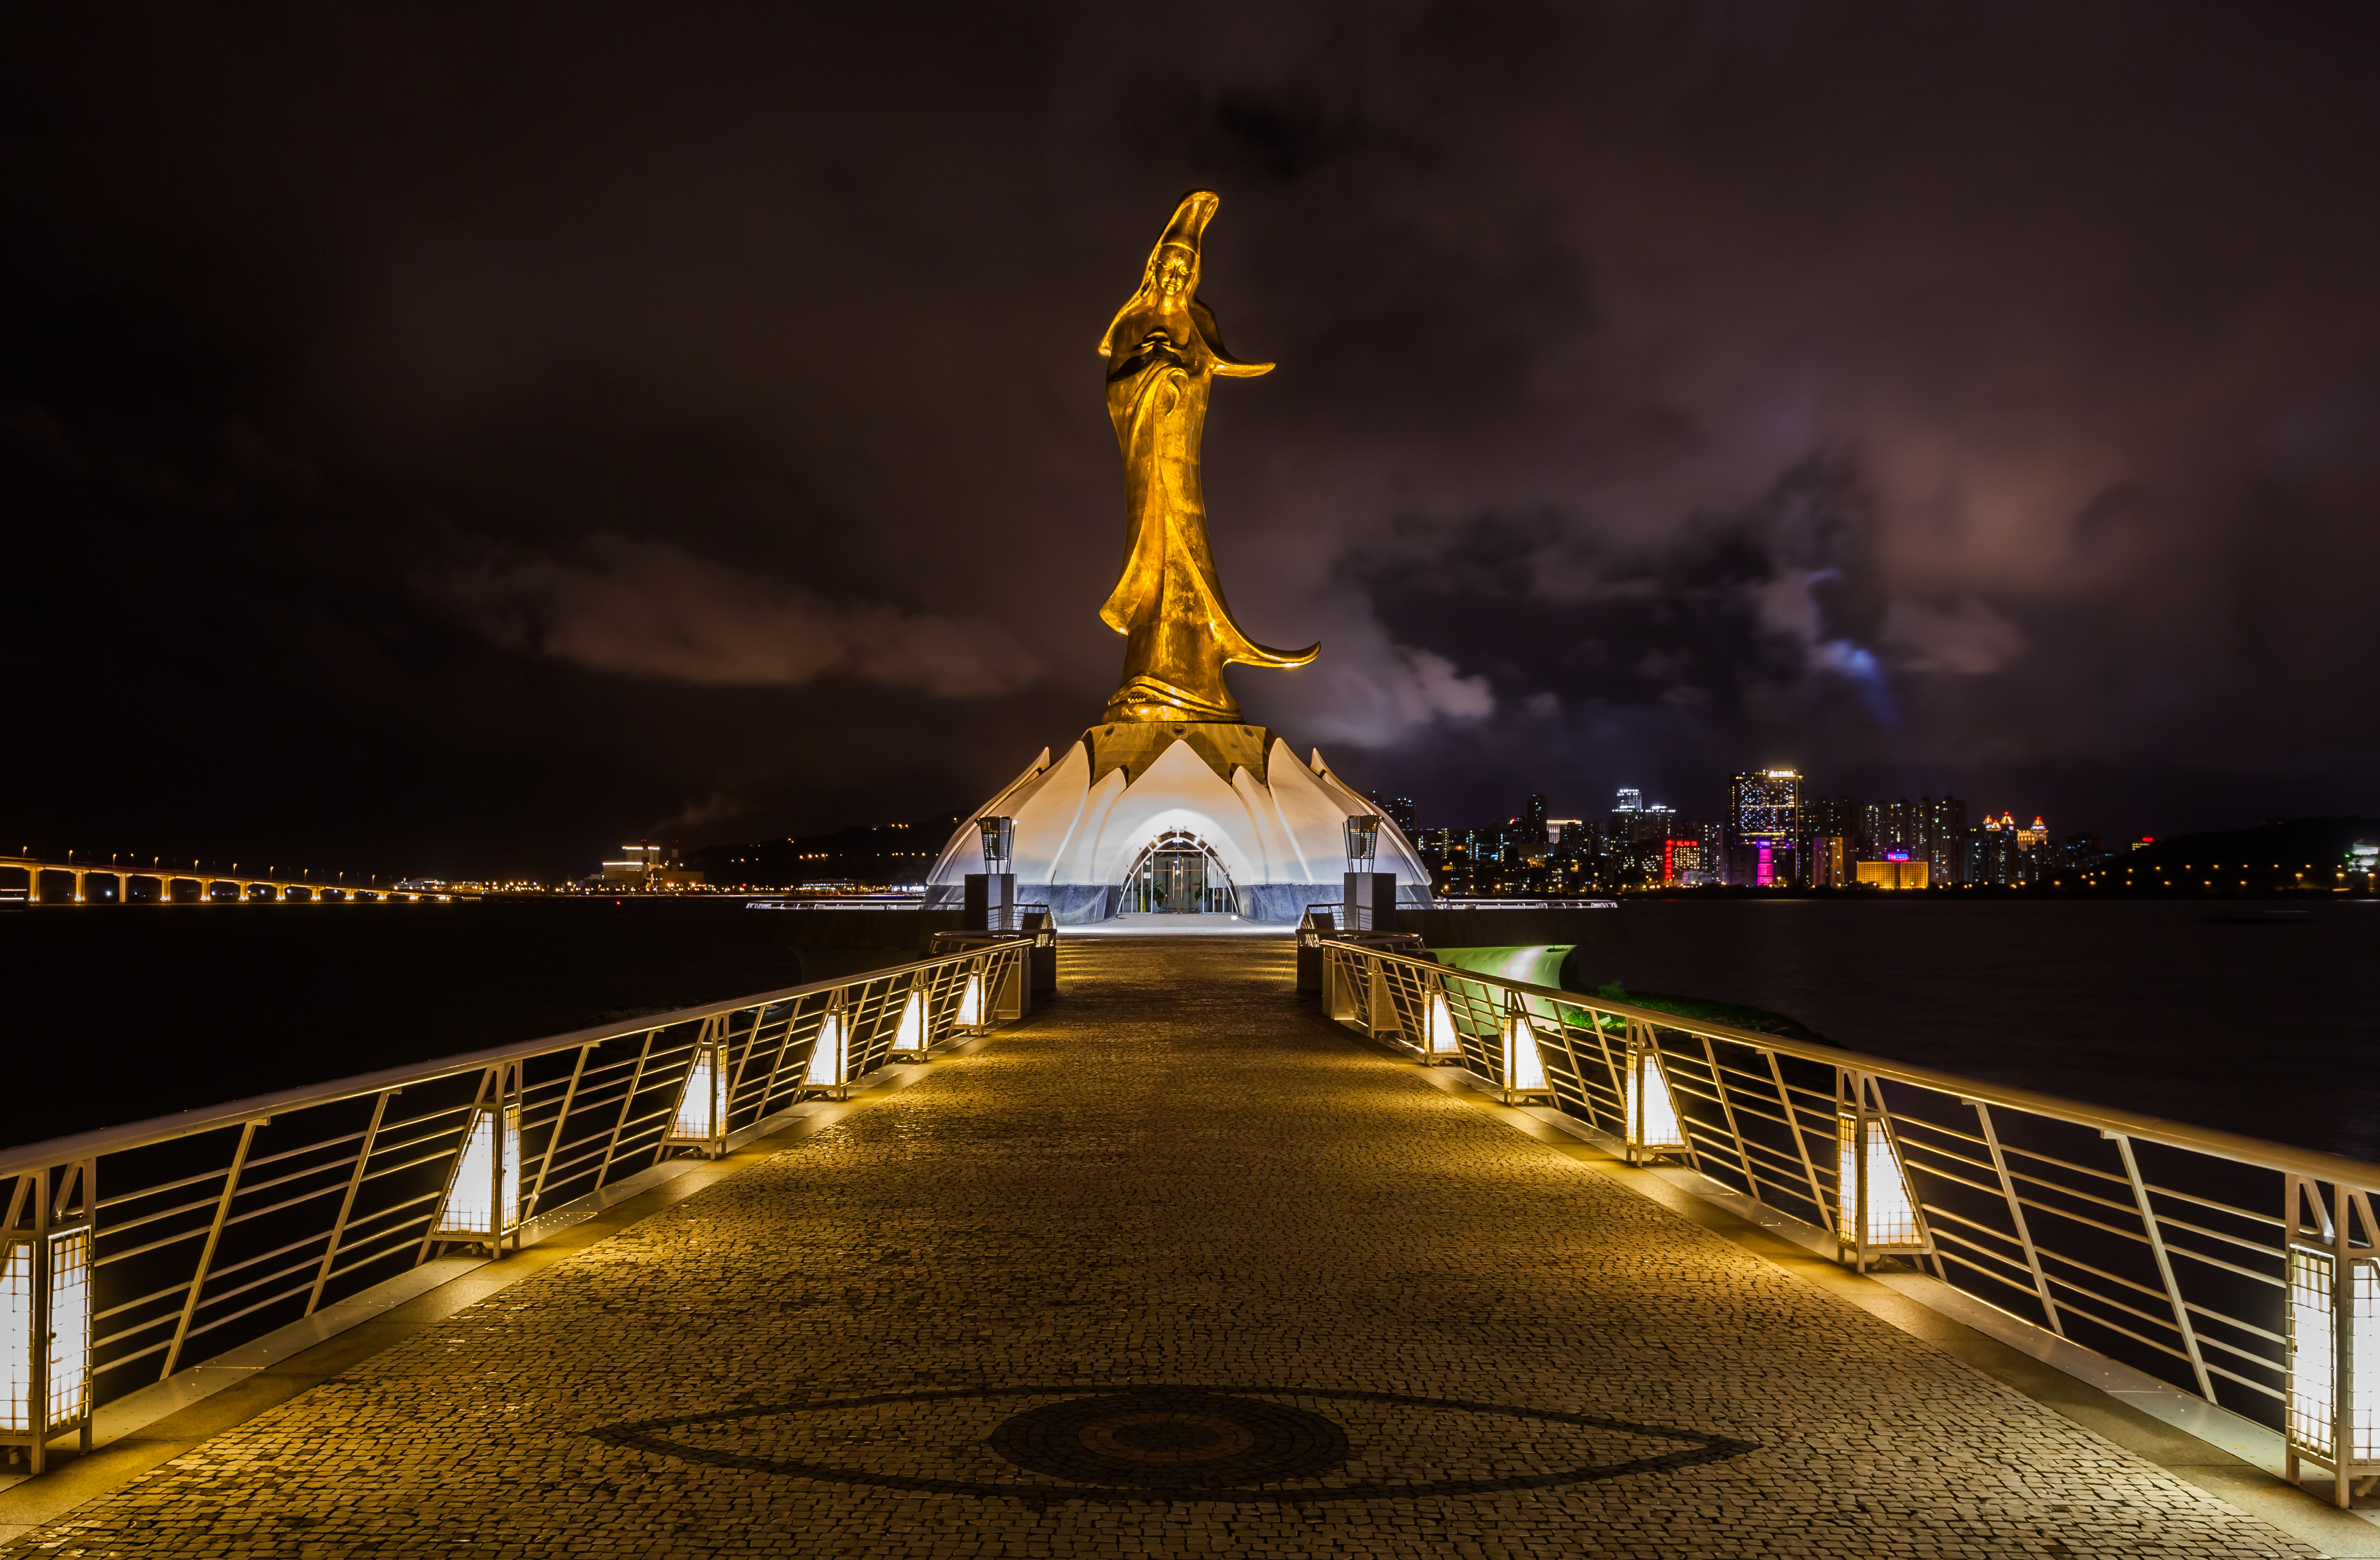 Estatua de Guan Yin, Macao, 2013-08-08, DD 08